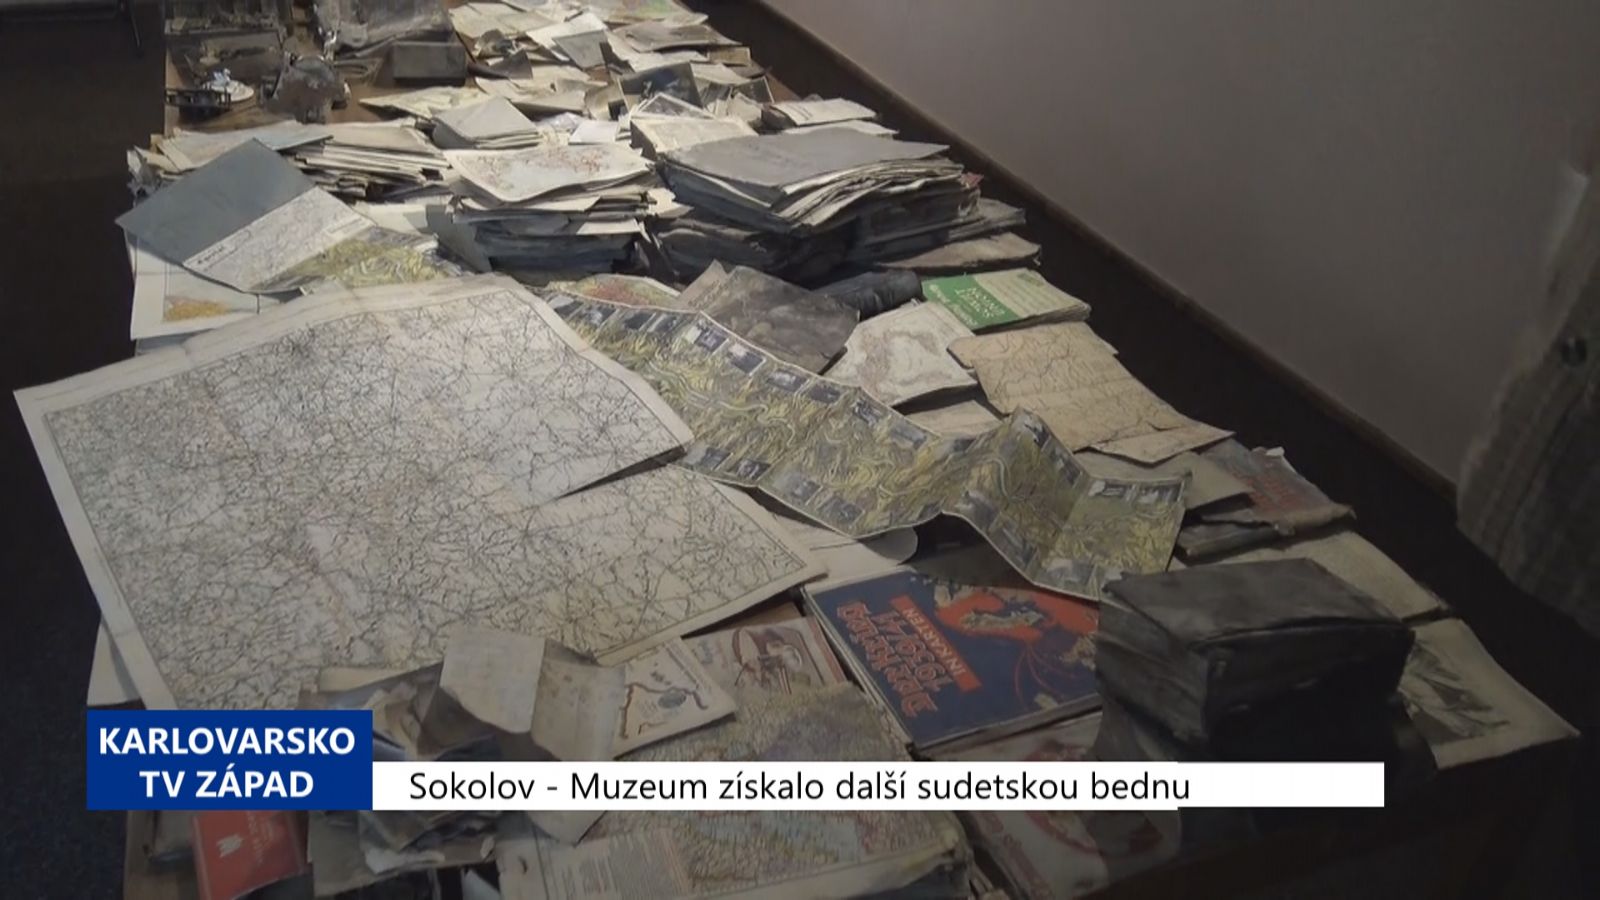 Sokolov: Muzeum získalo další sudetskou bednu (TV Západ)